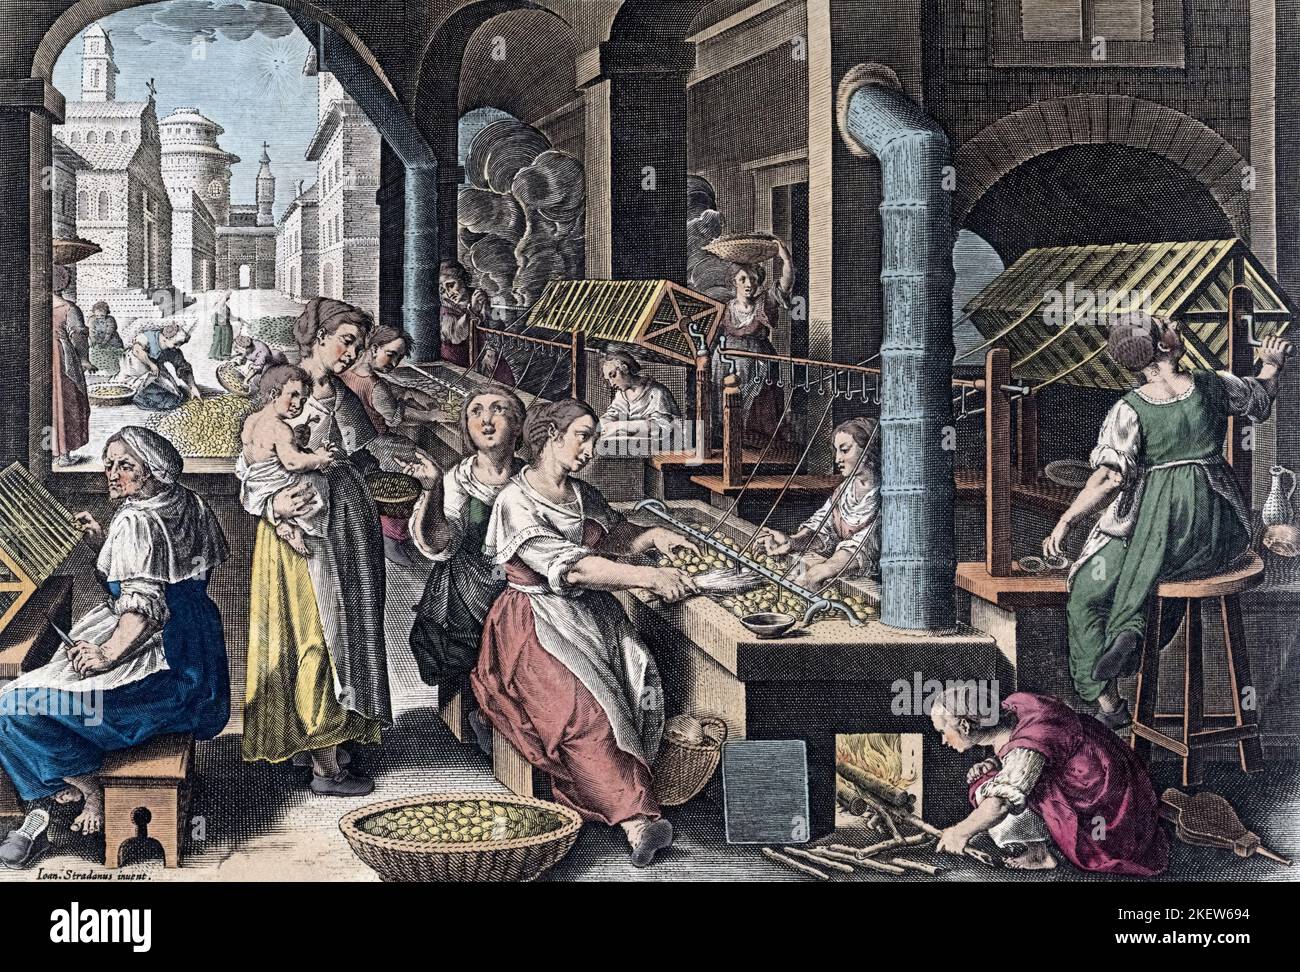 Producción de seda en Europa en el siglo 16th. Hilos de seda de capullos. De Vermis Sericus, una serie de grabados de Karel van Mallery después de una obra de Jan van der Straet, conocida como Stradanus. Foto de stock